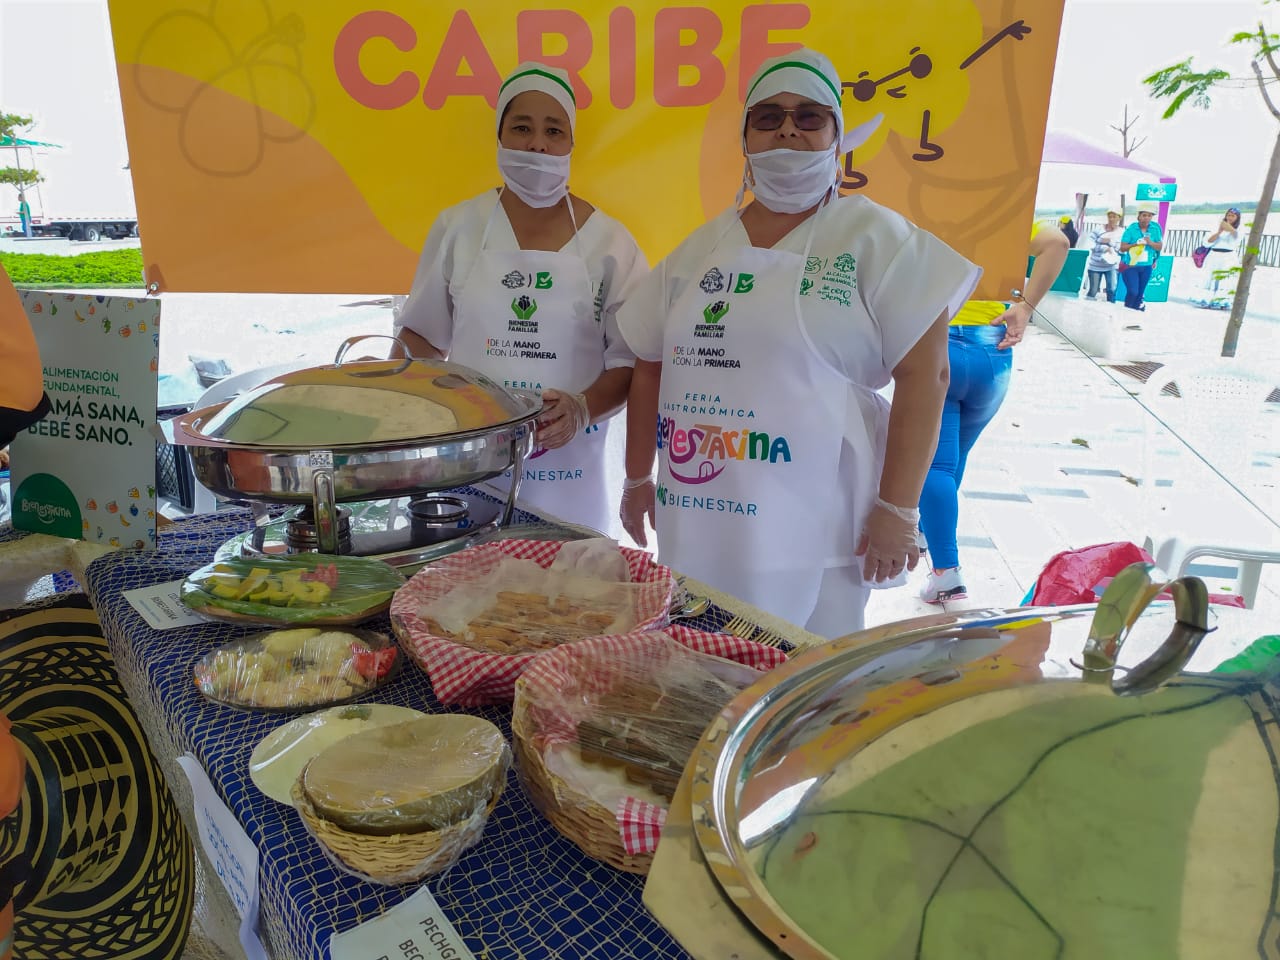 La principal atracción del evento fue el concurso gastronómico.